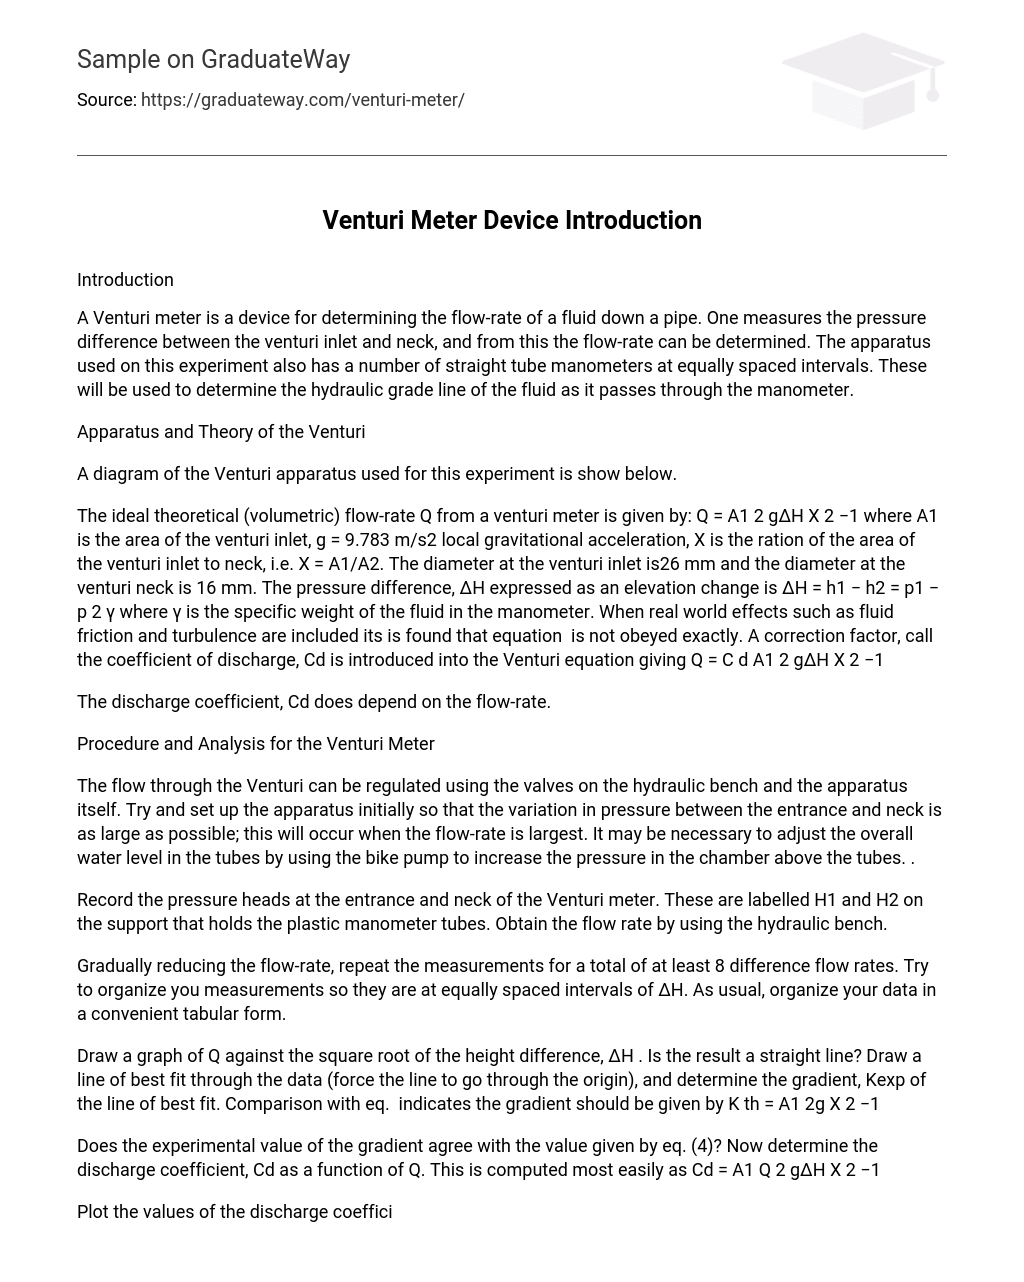 Venturi Meter Device Introduction